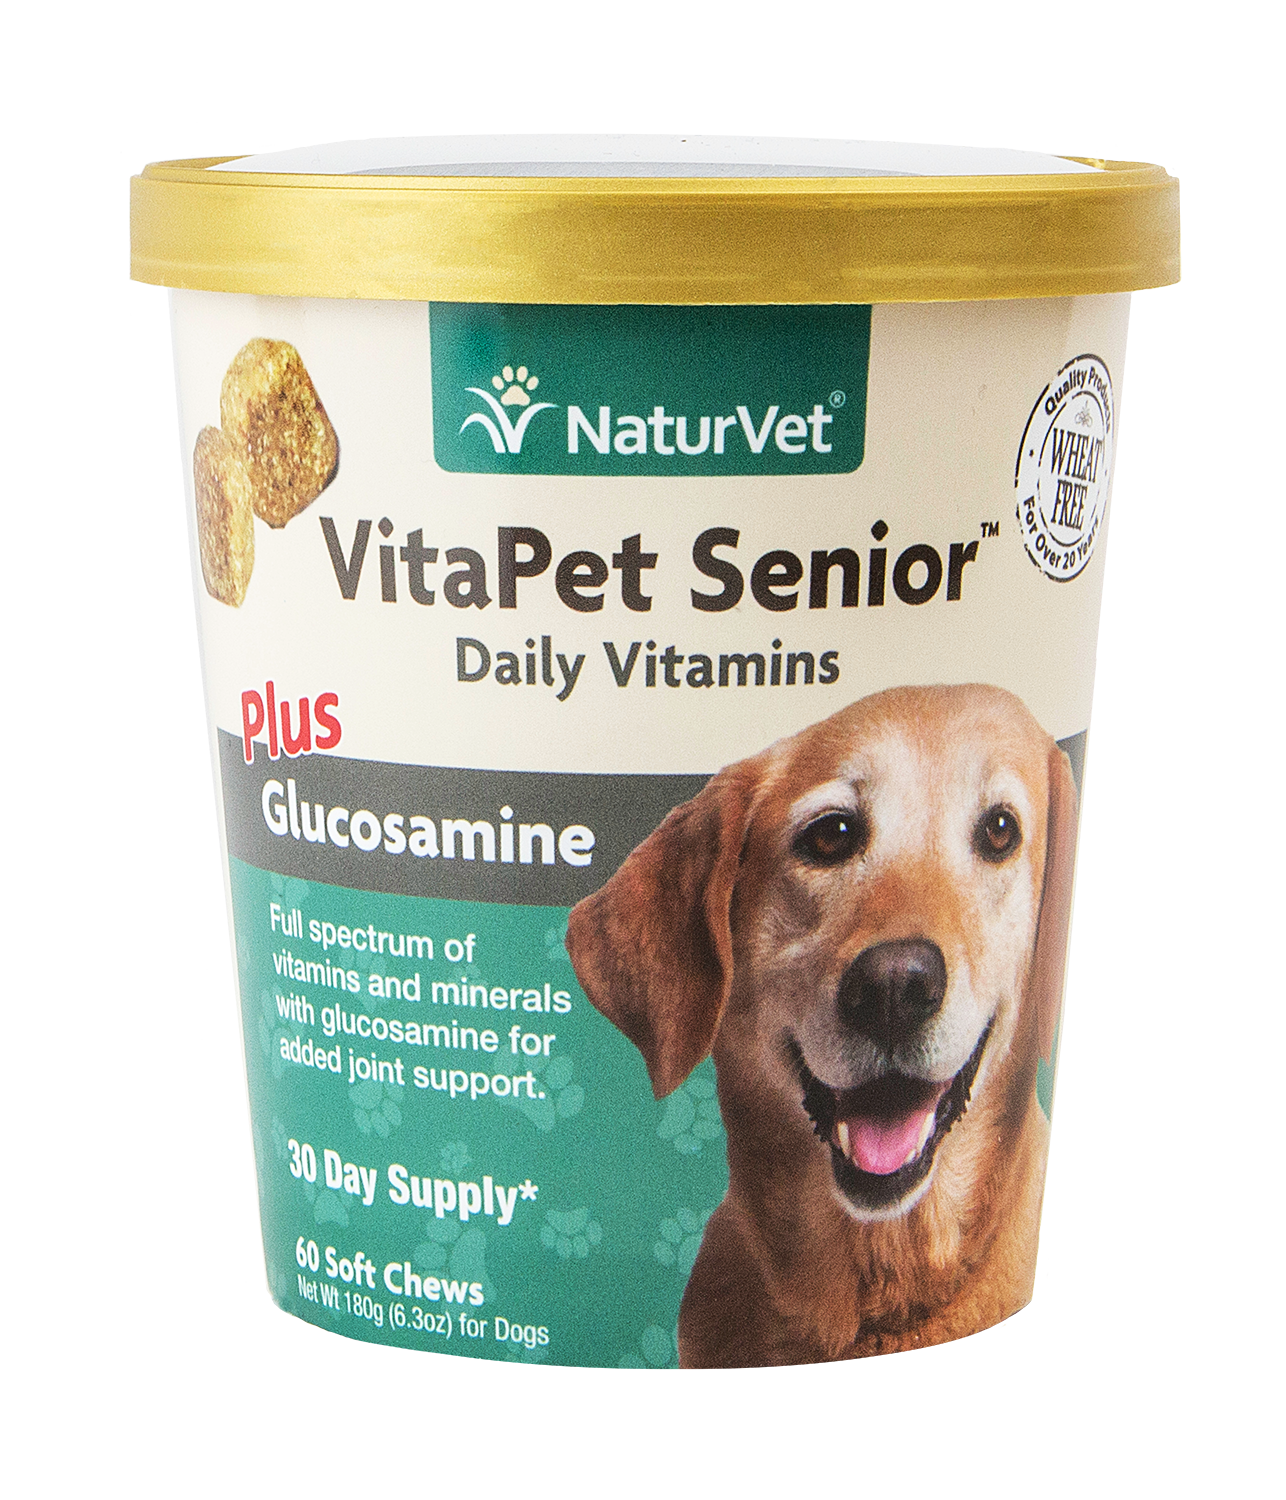 Naturvet VitaPet SeniorTM Plus Glucosamine Soft Chews